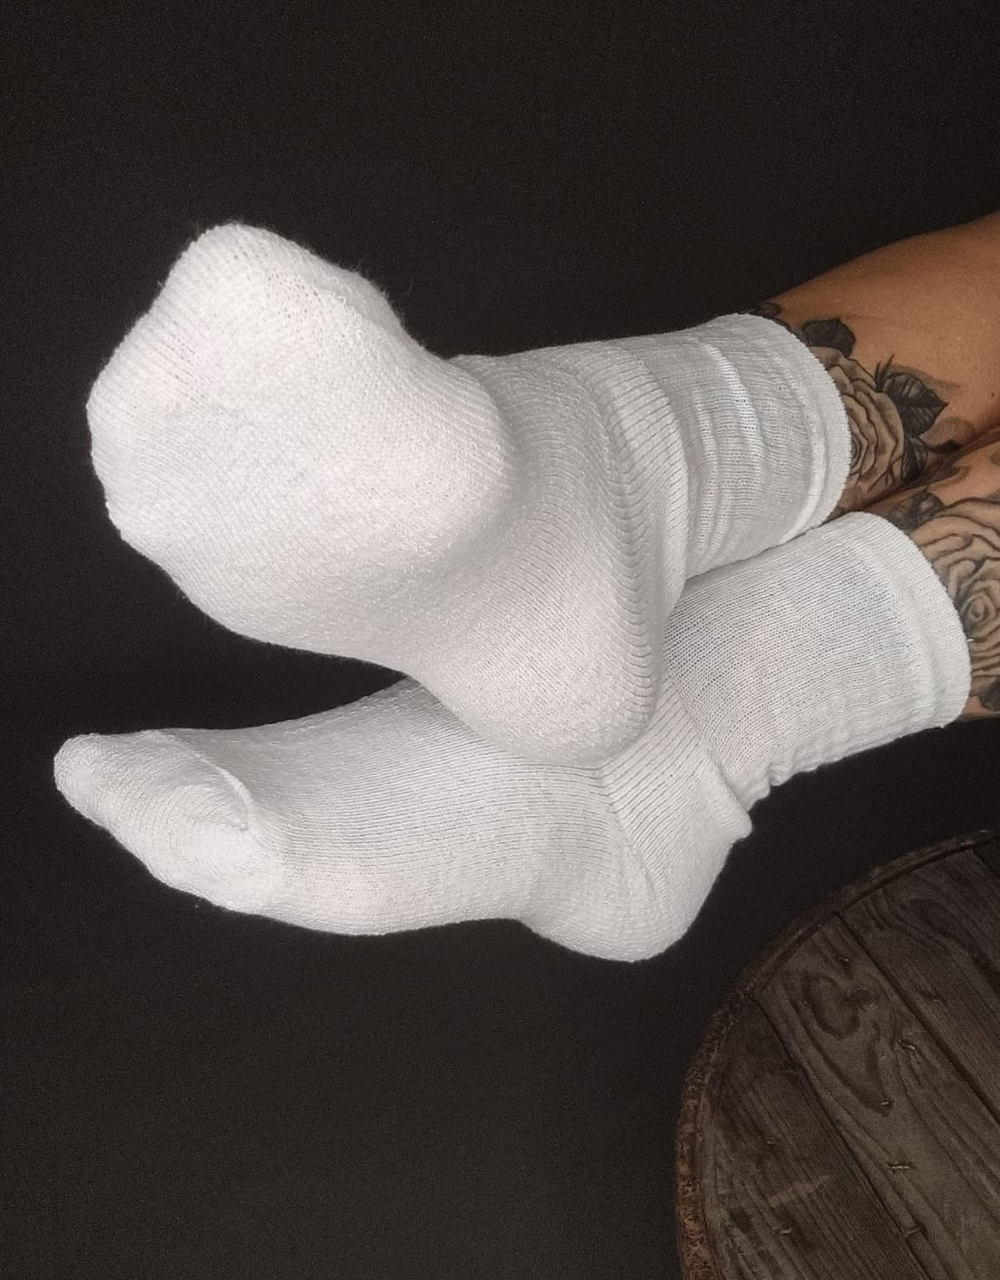 Chany Tattoos Füße, sie trägt weiße Socken